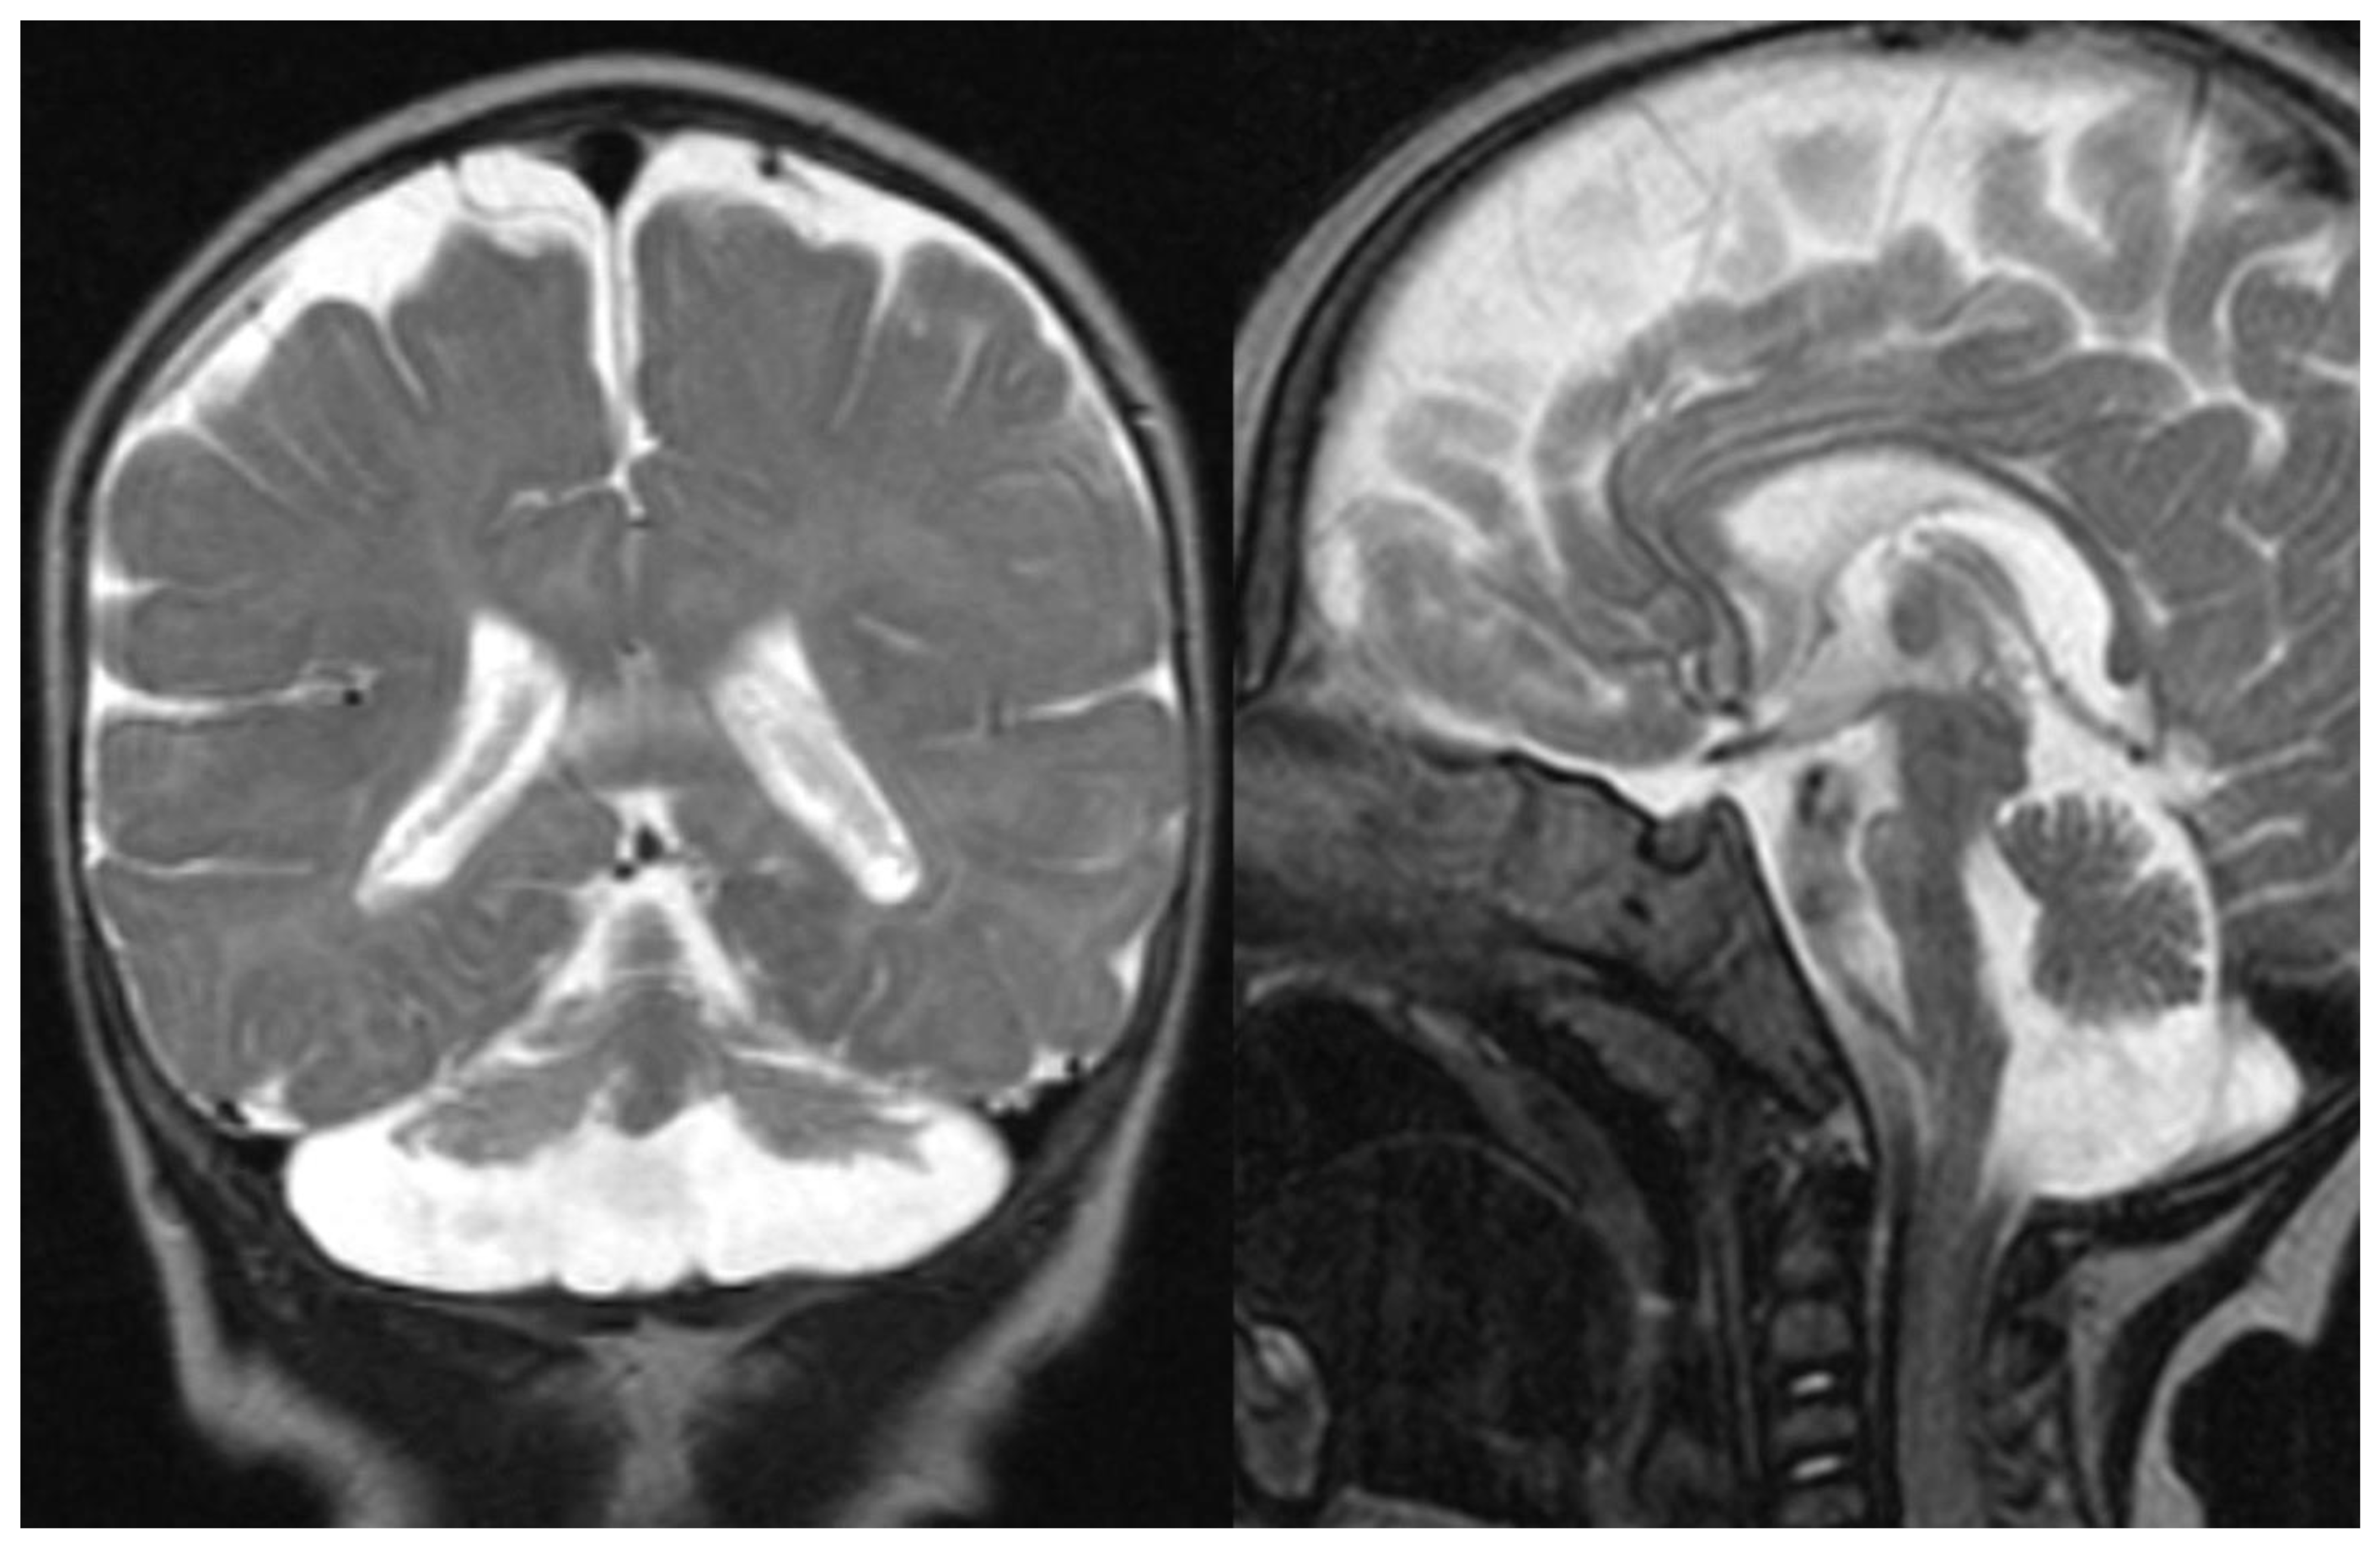 ataxia telangiectasia brain